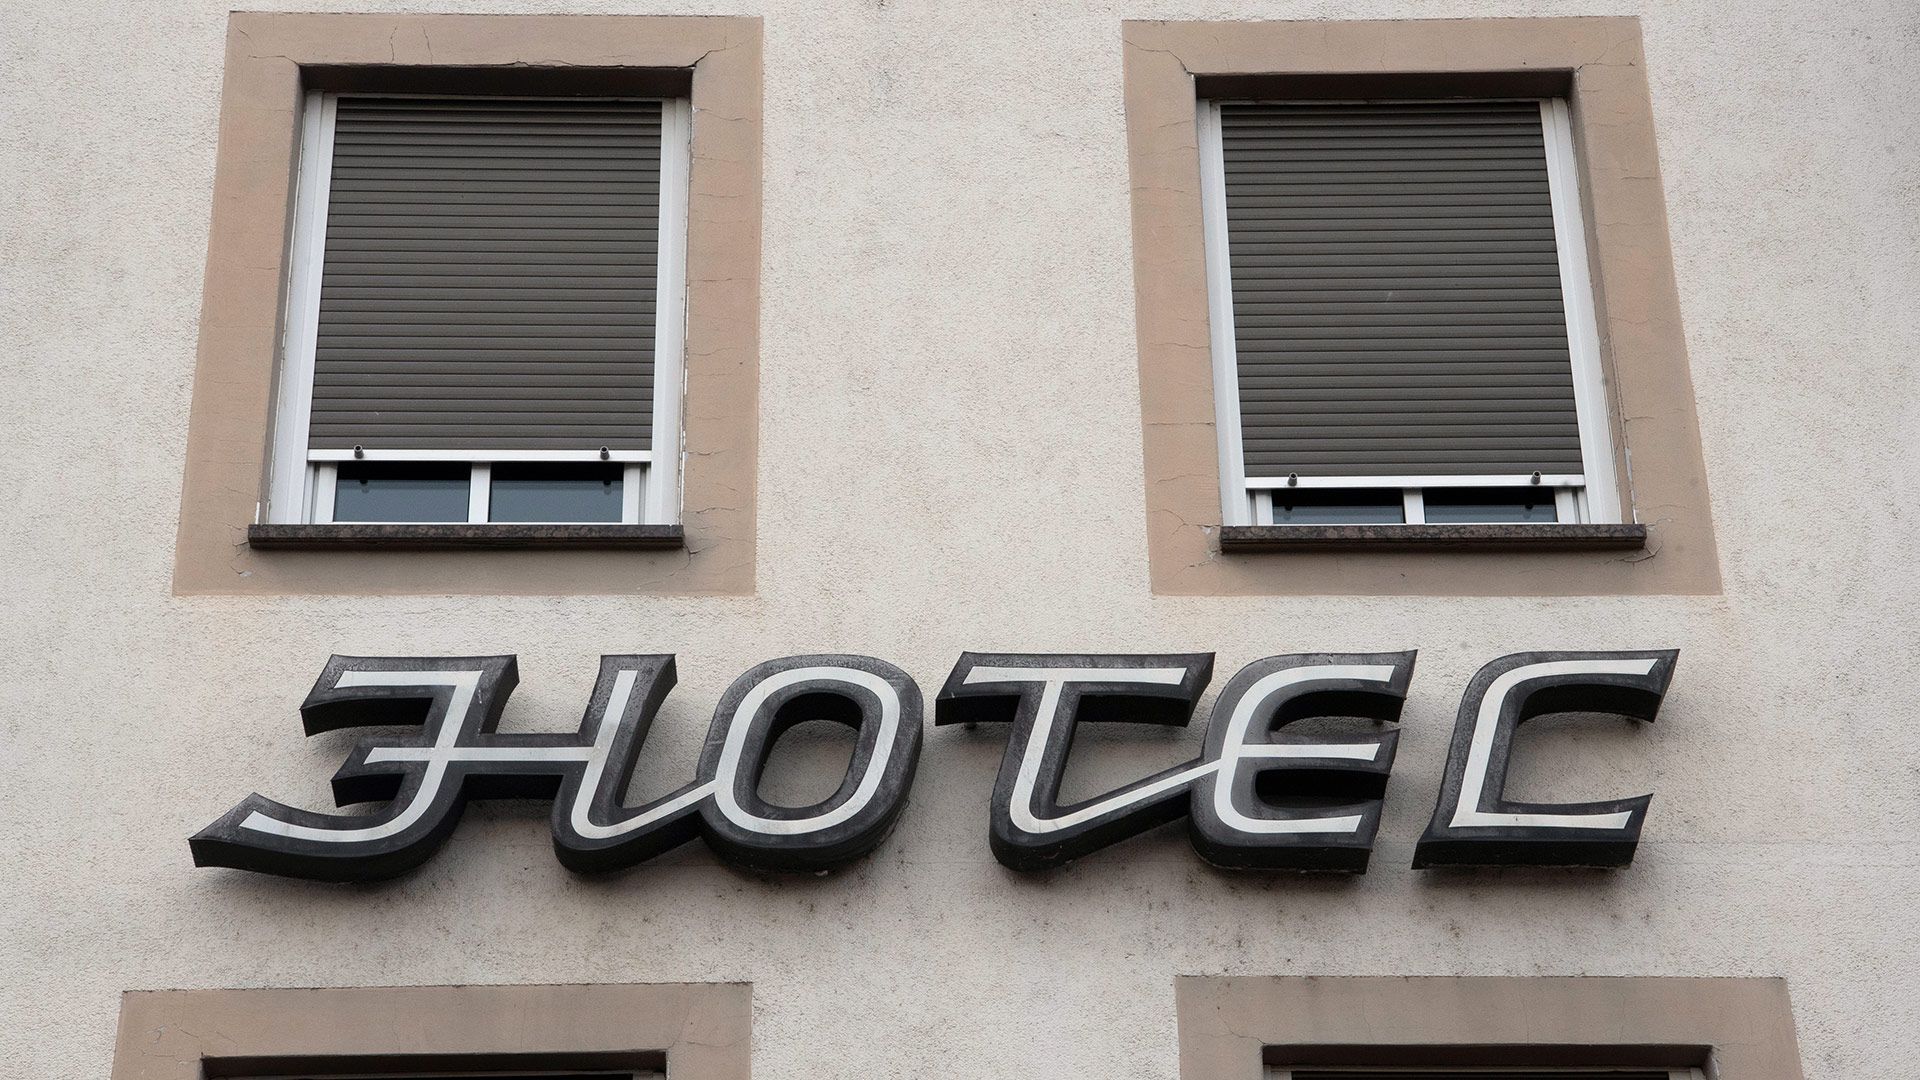 Immer mehr Pleiten: Viele Hotels kämpfen ums Überleben - tagesschau.de